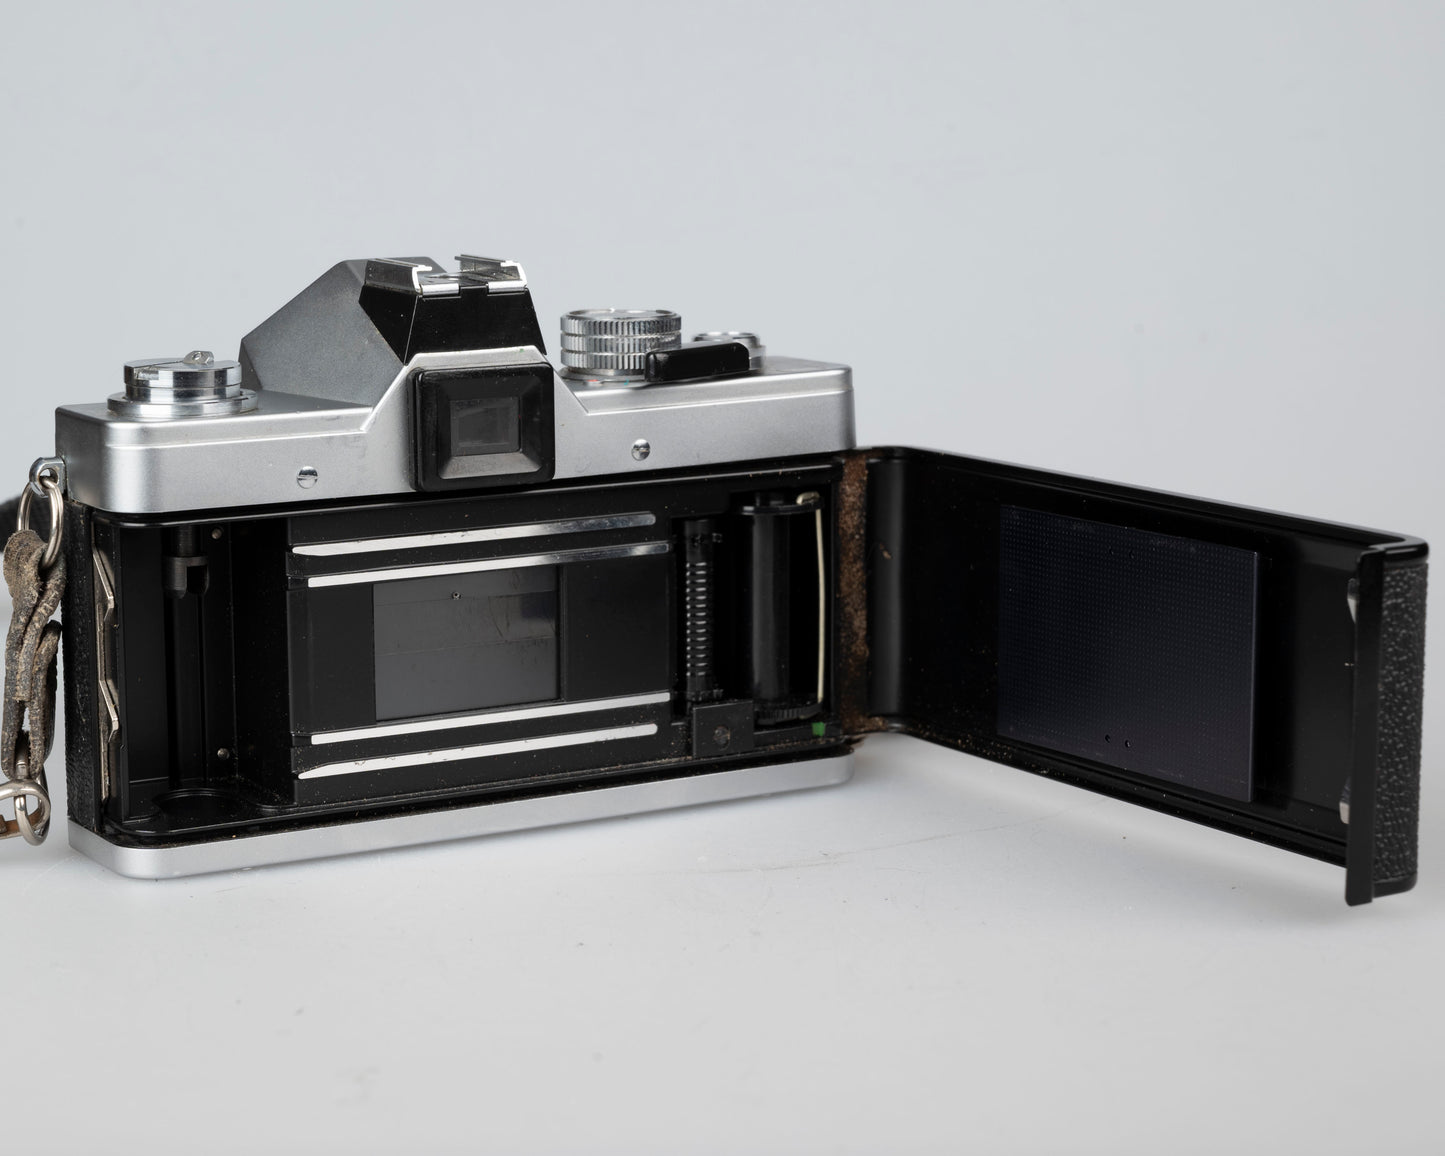 Appareil photo reflex à film Praktica LTL 3 35 mm avec objectif Pentacon 50 mm f1.8 (série 344044)